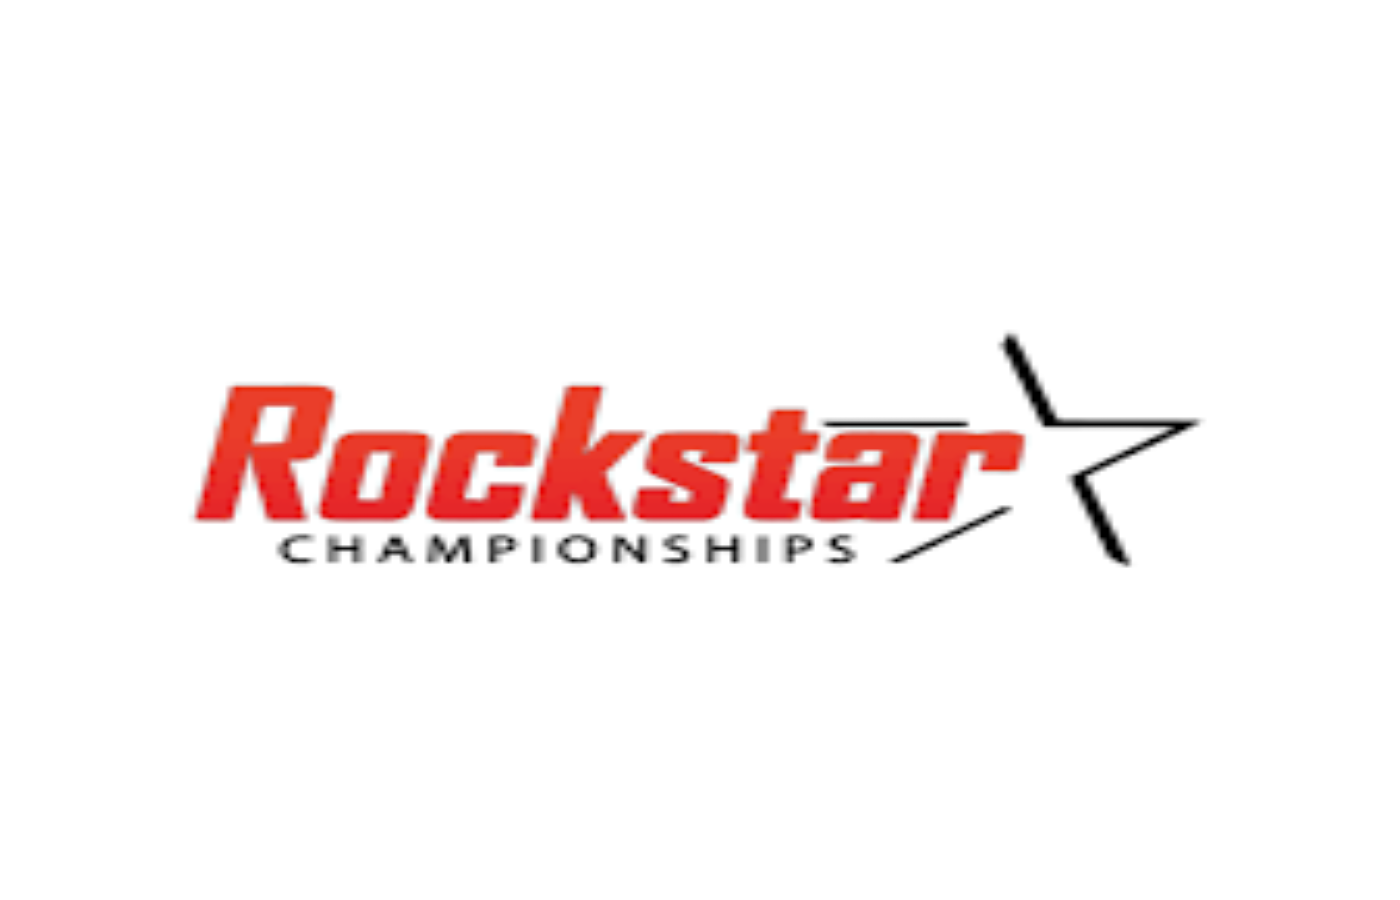 Rockstar Championships